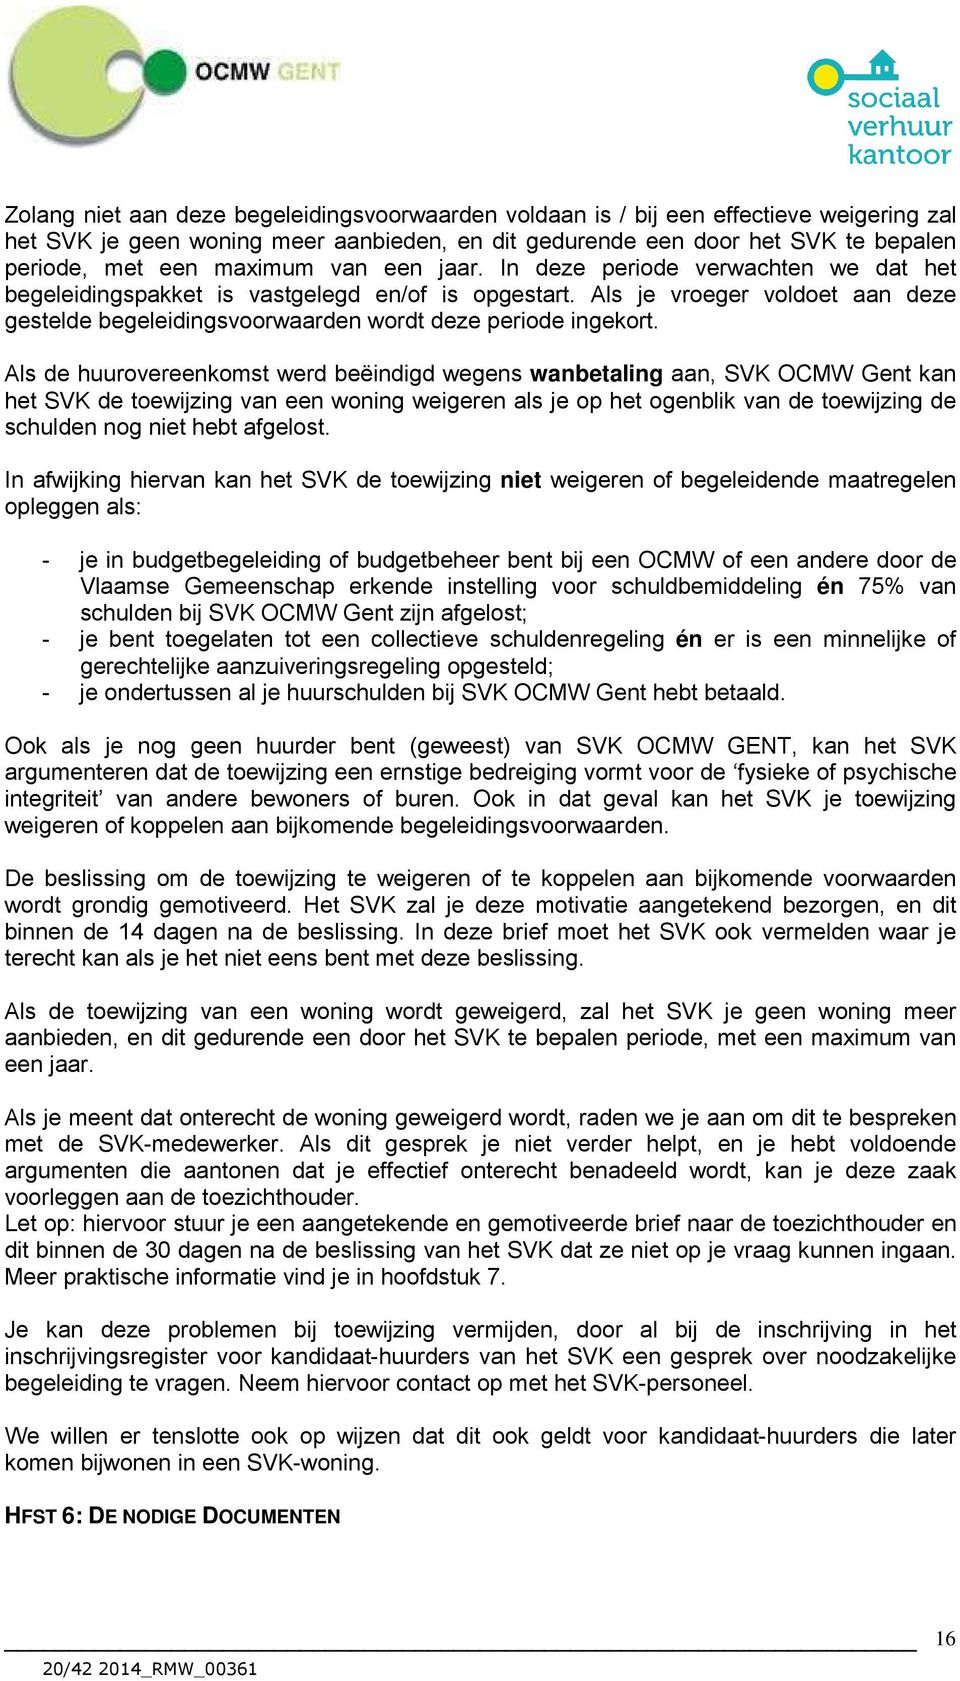 Als de huurovereenkomst werd beëindigd wegens wanbetaling aan, SVK OCMW Gent kan het SVK de toewijzing van een woning weigeren als je op het ogenblik van de toewijzing de schulden nog niet hebt